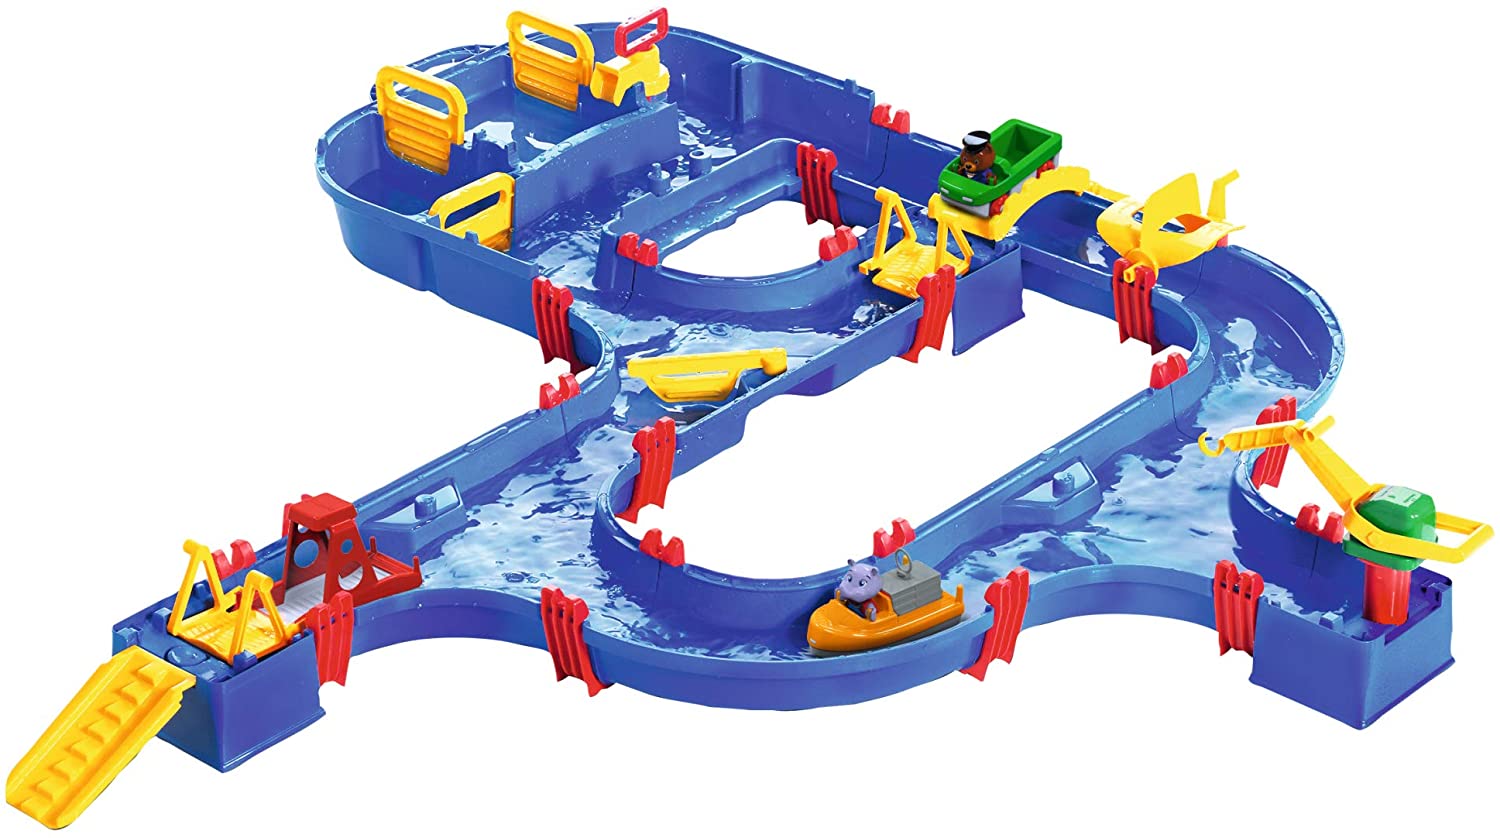 Big Spielwarenfabrik-8700001640-Water Channel Toy